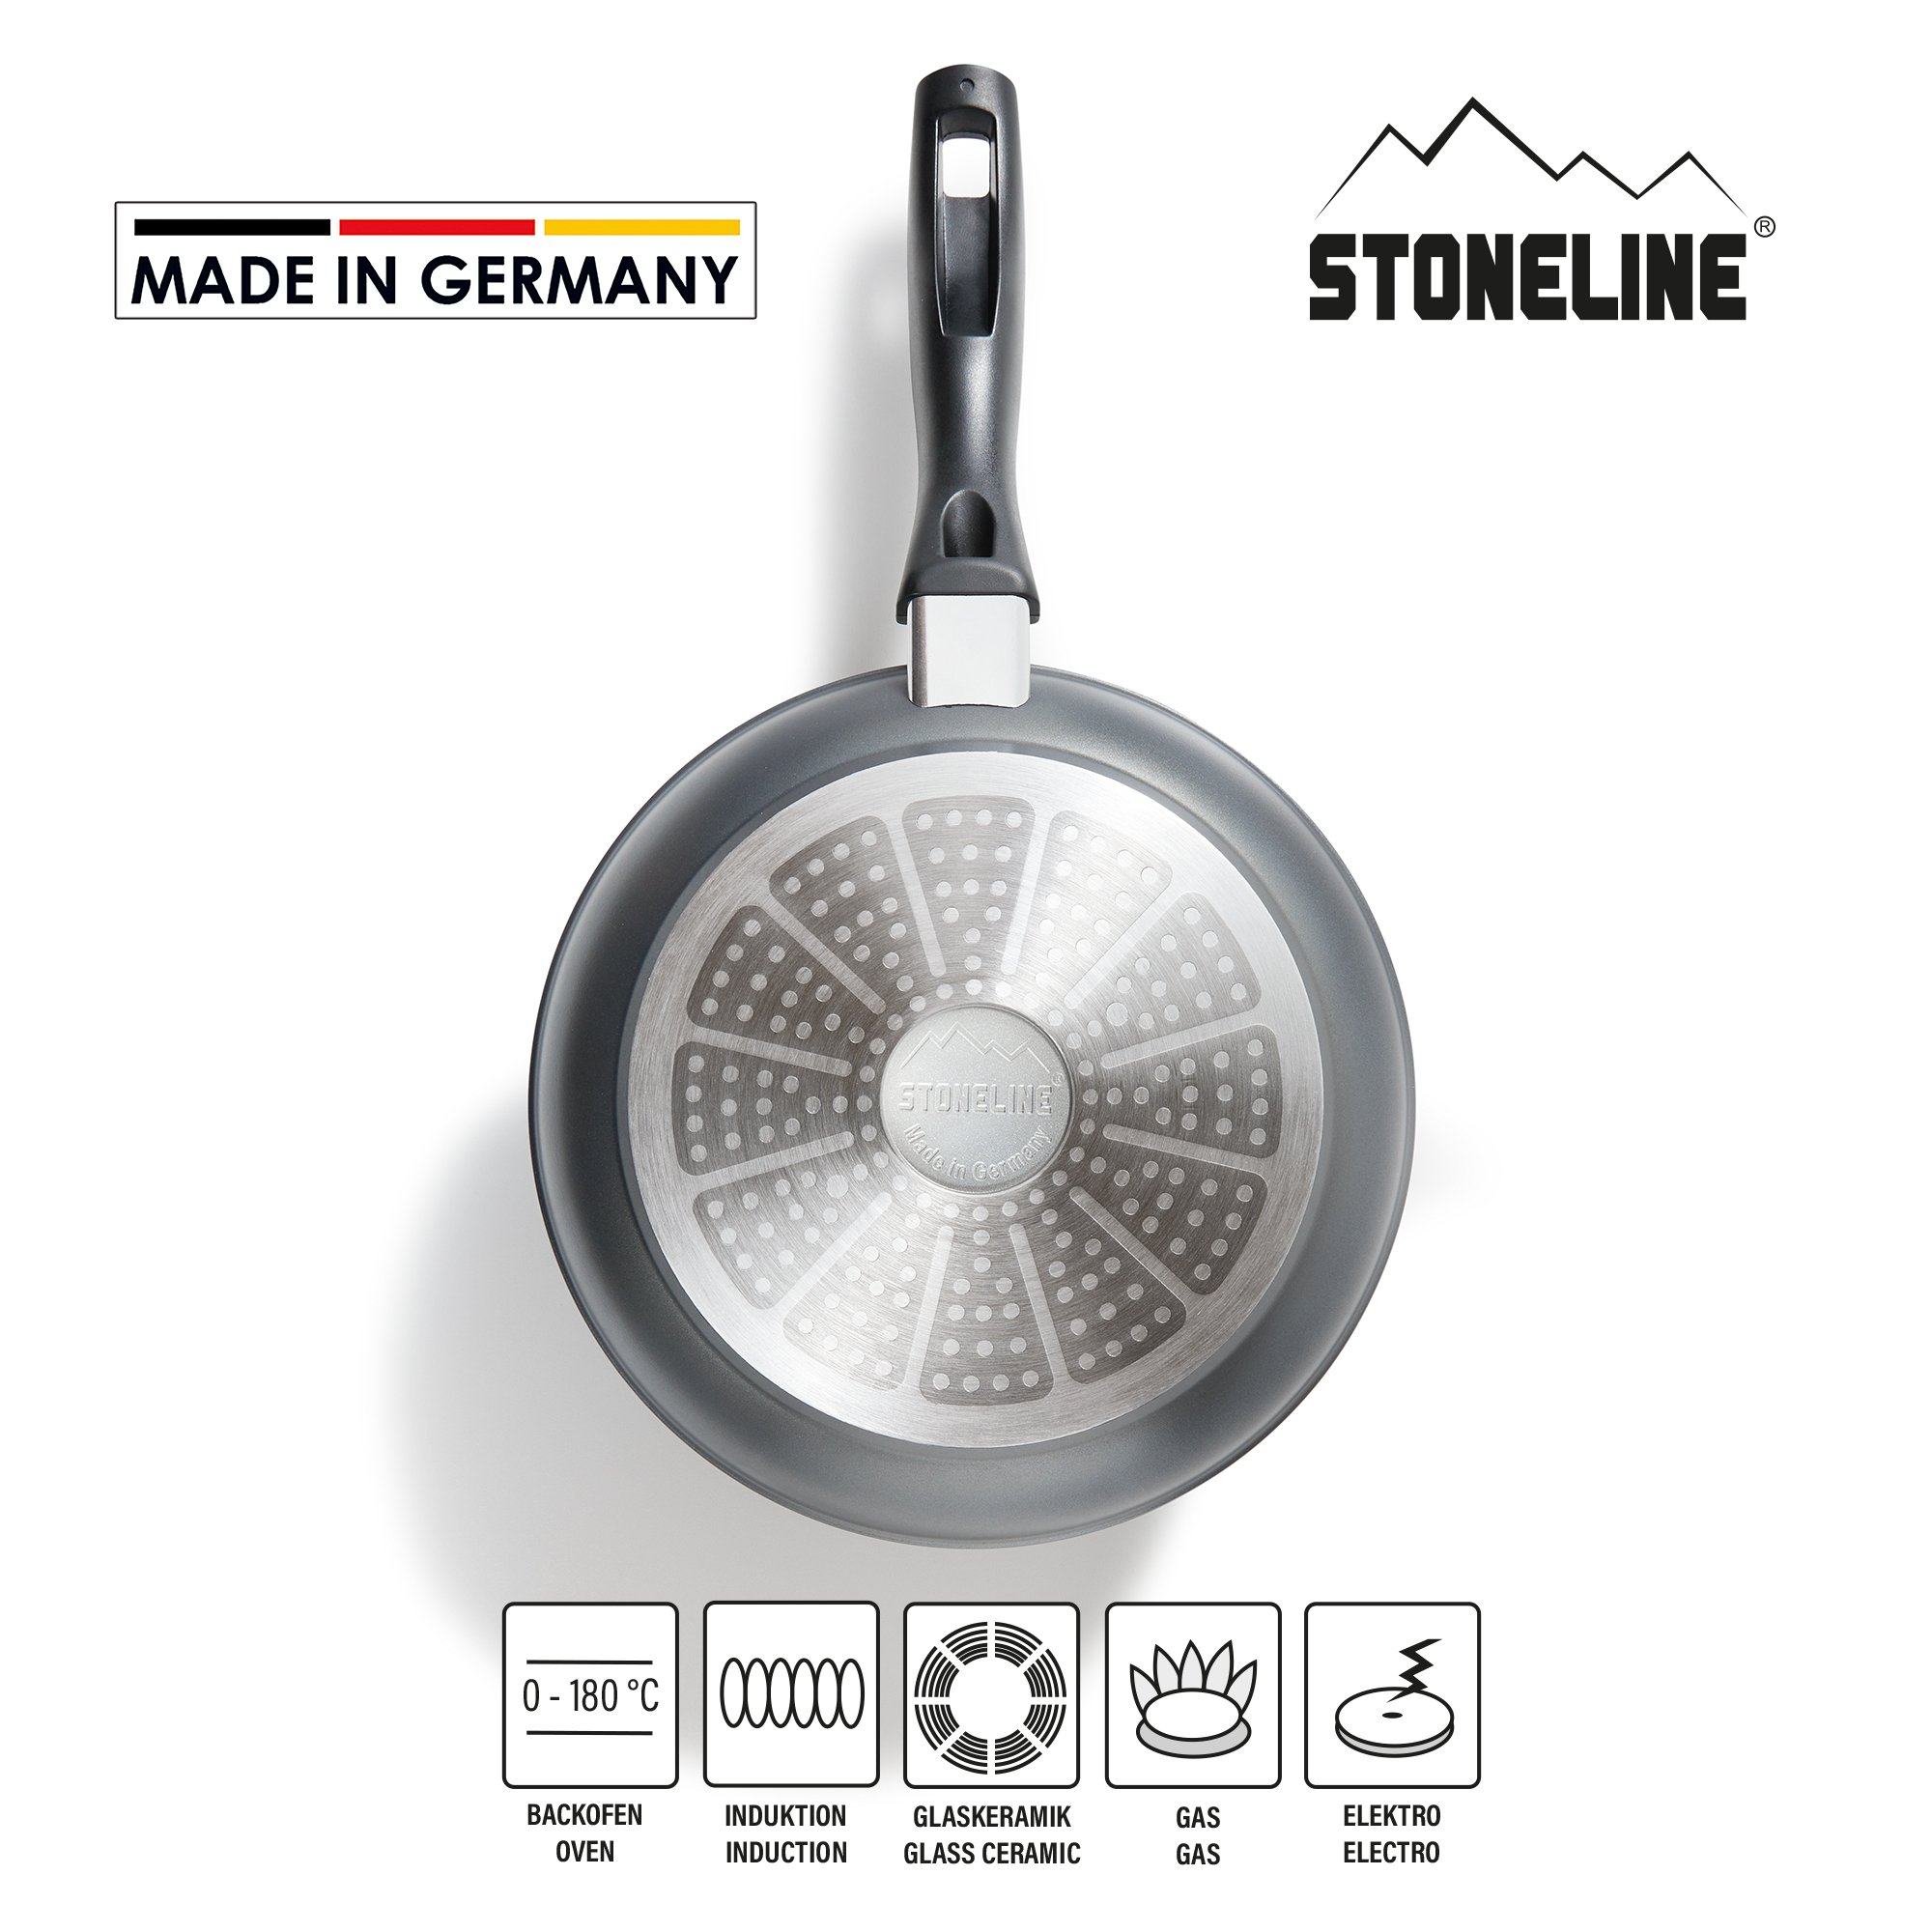 STONELINE® sartén 24 cm, Made in Germany, sartén con revestimiento antiadherente, apta para inducción